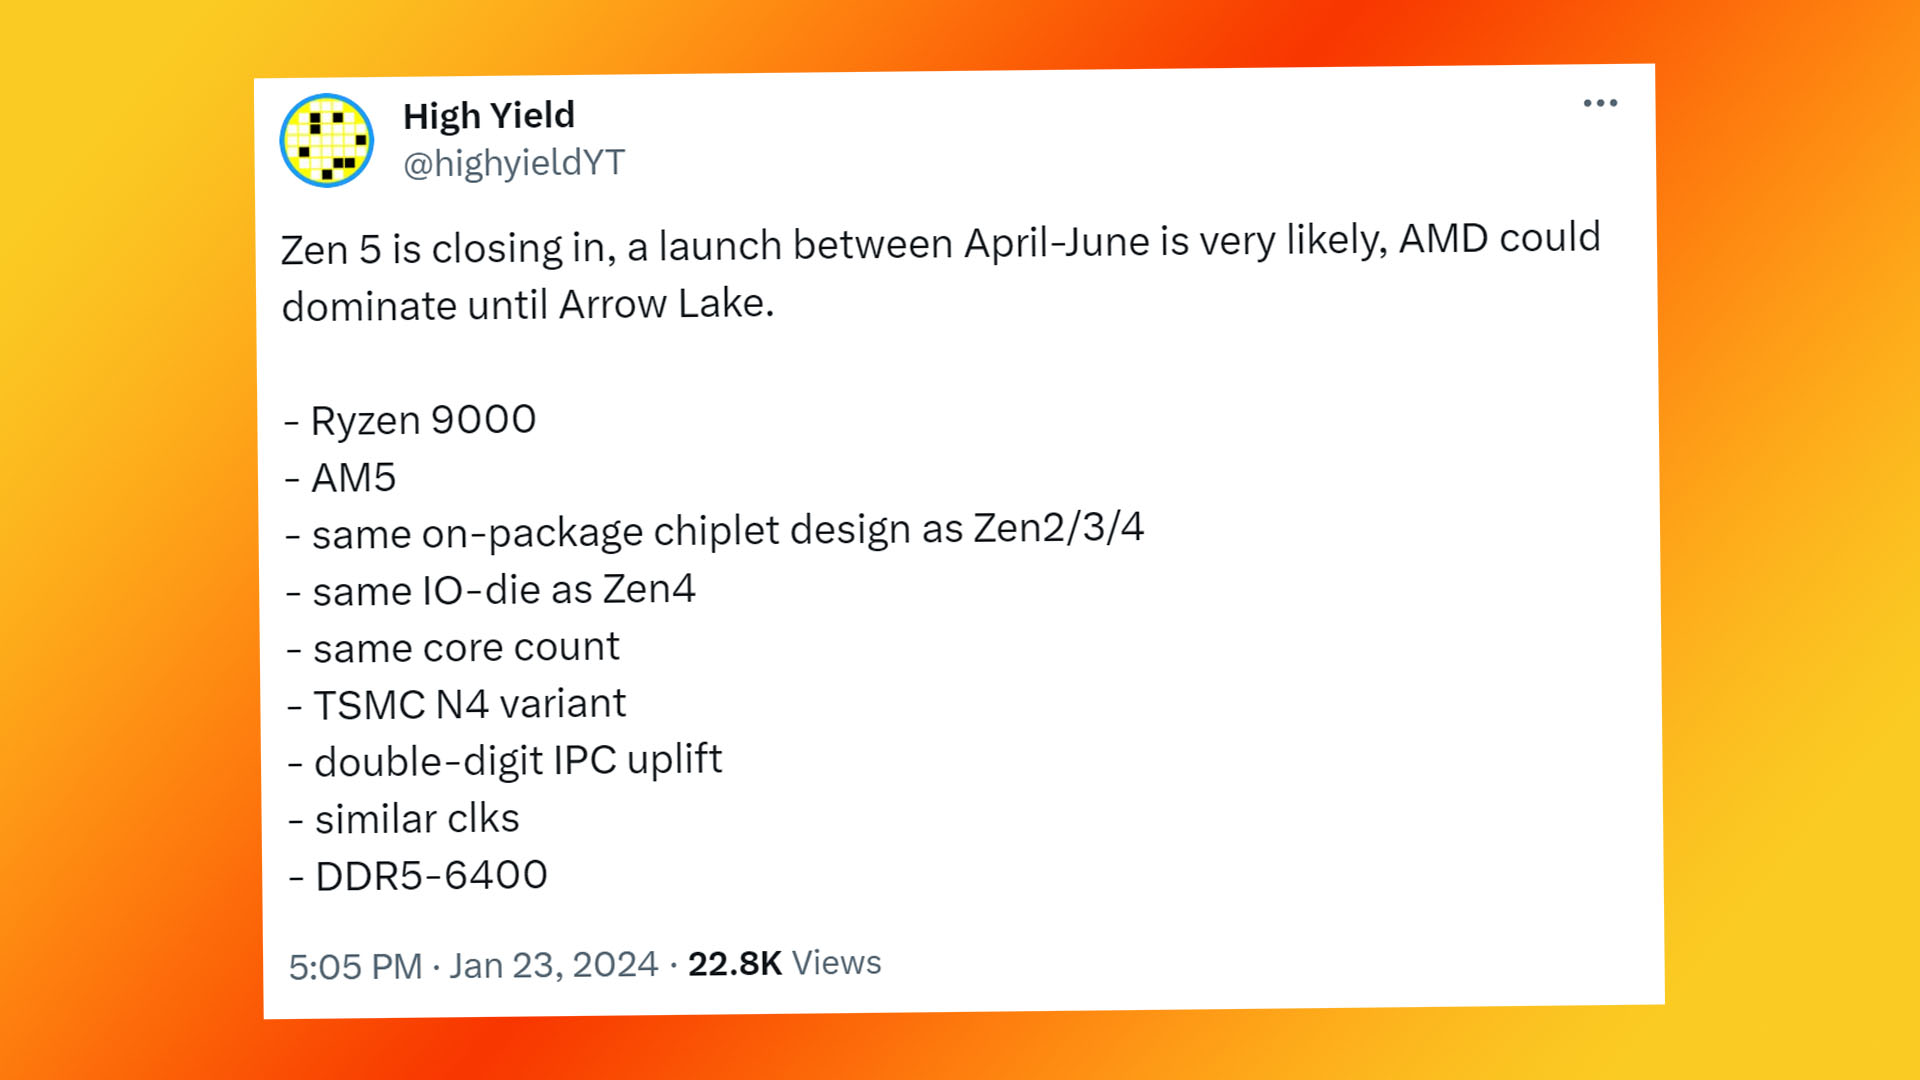 Erscheinungsdatum des AMD Ryzen 9000: High-Yield-Tweet